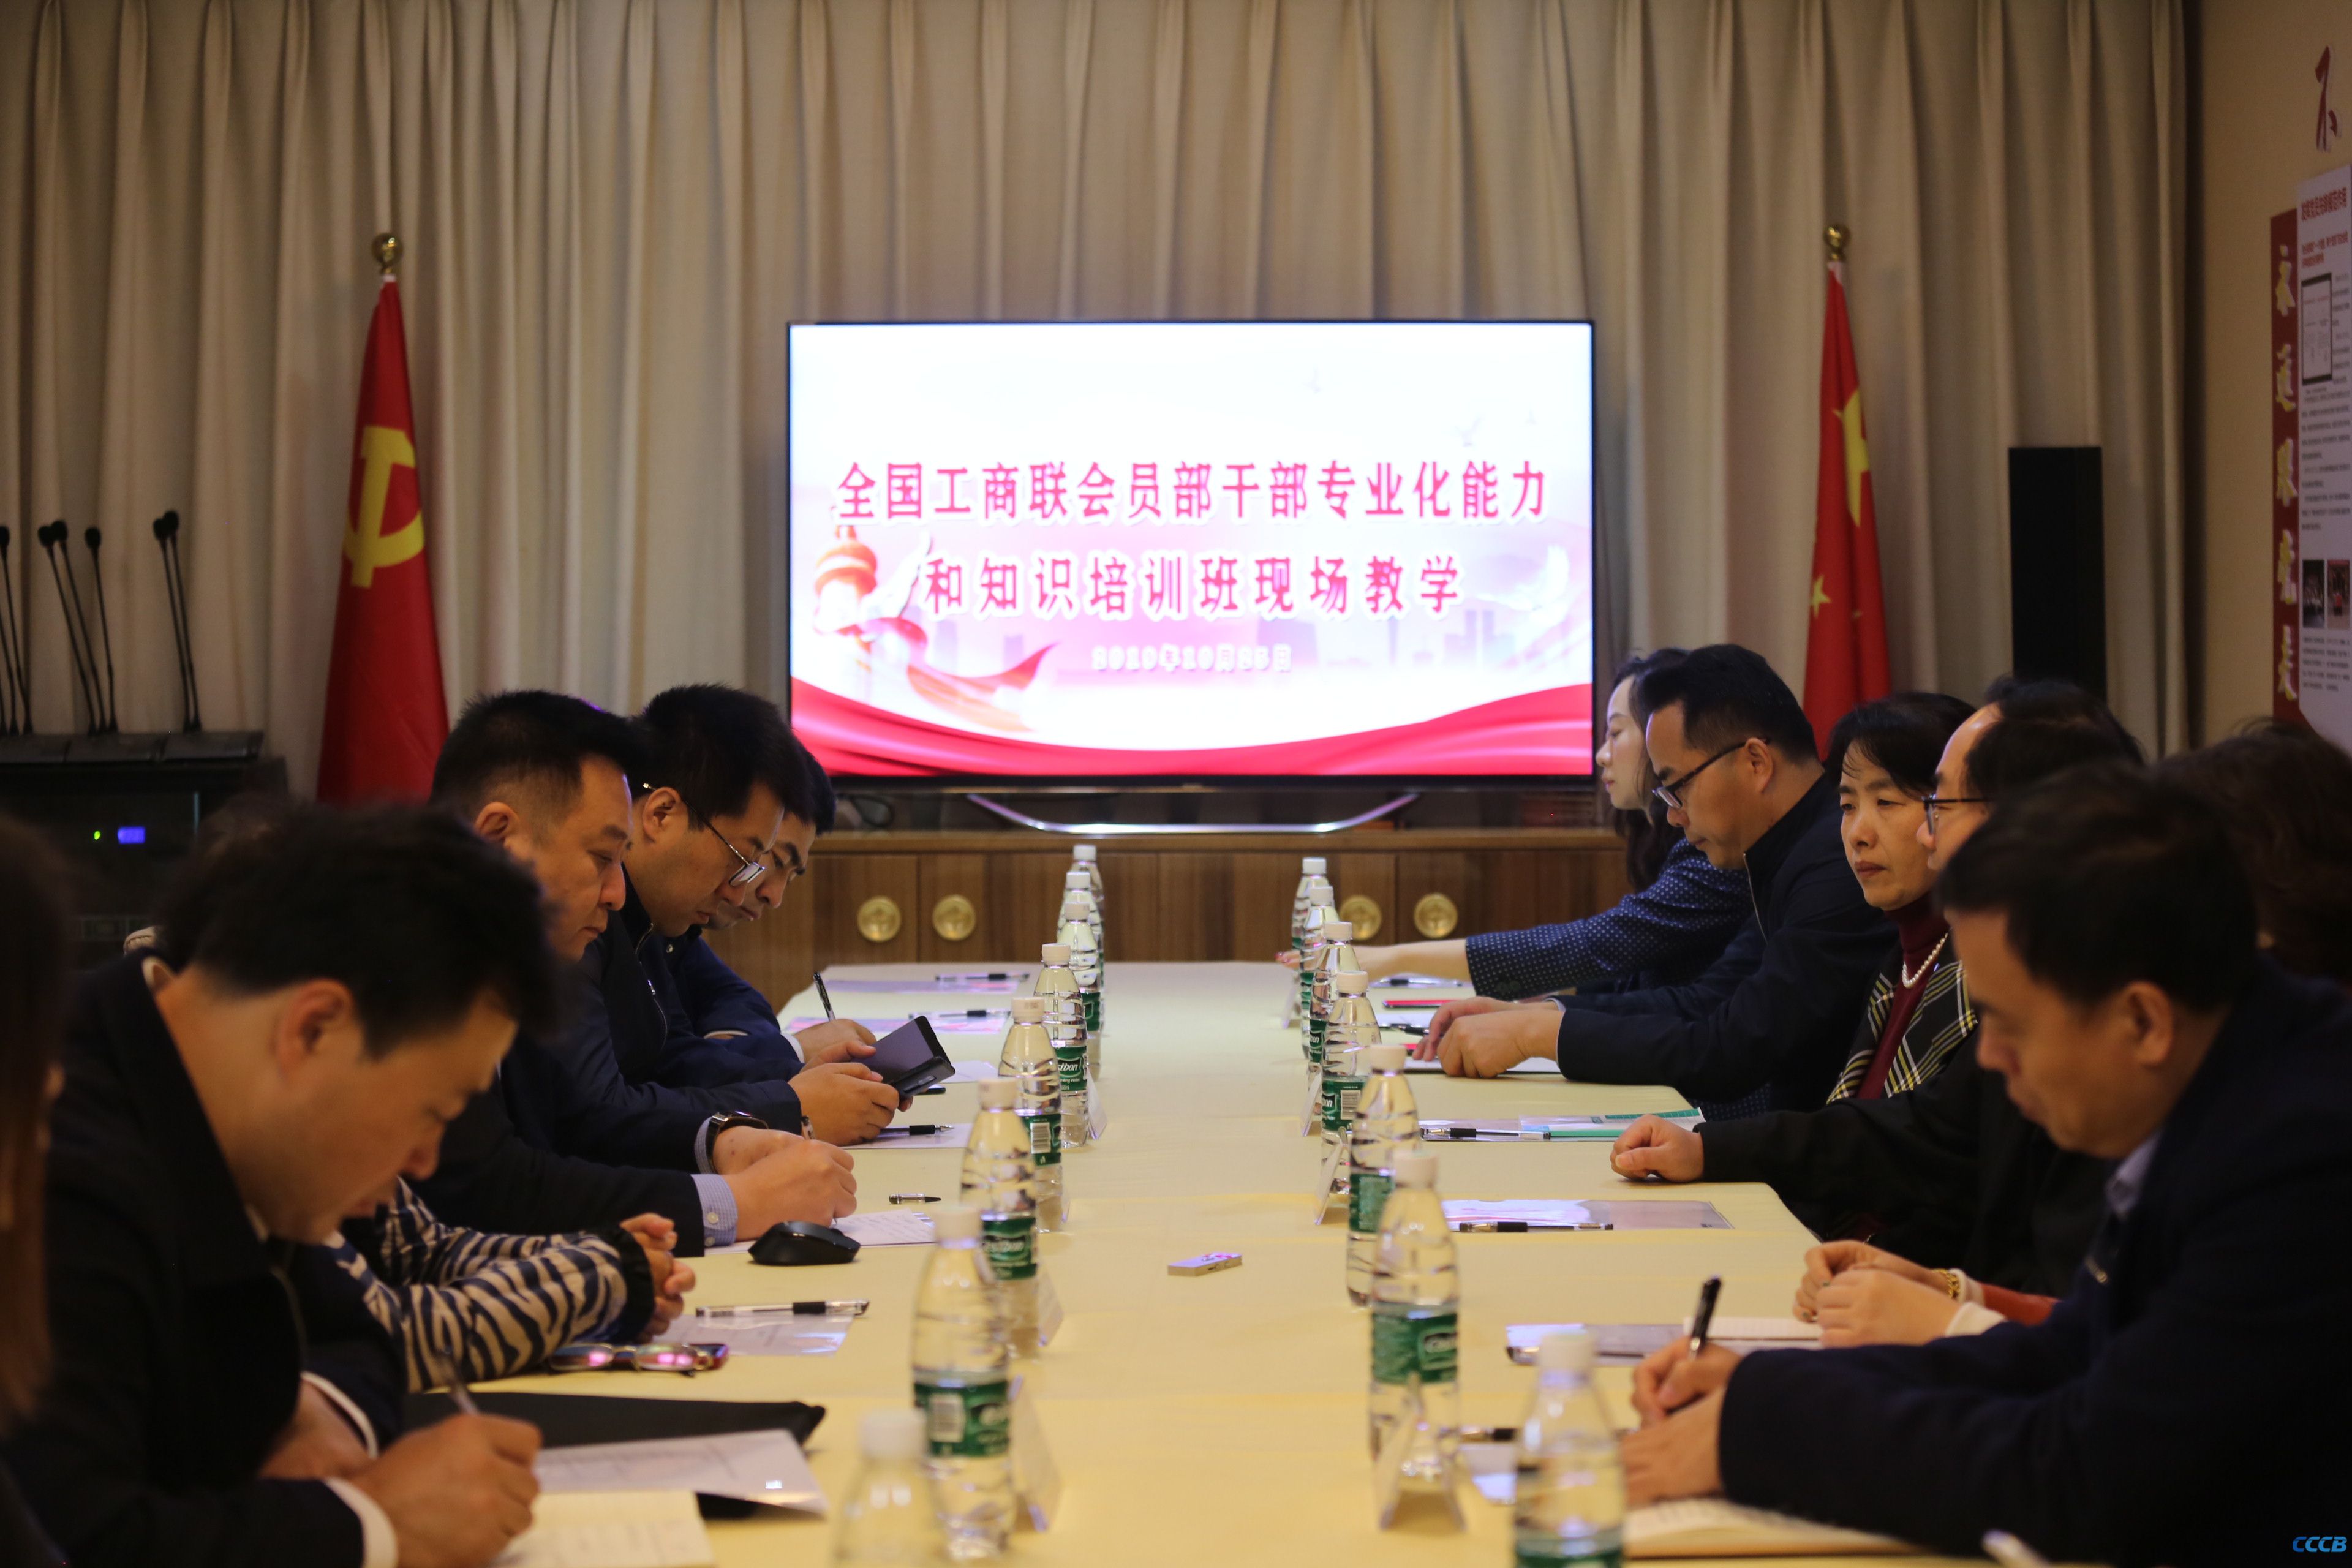 专题报道 | 全国工商联会员部干部专业化能力和知识培训班现场教学在北京潮商会举行